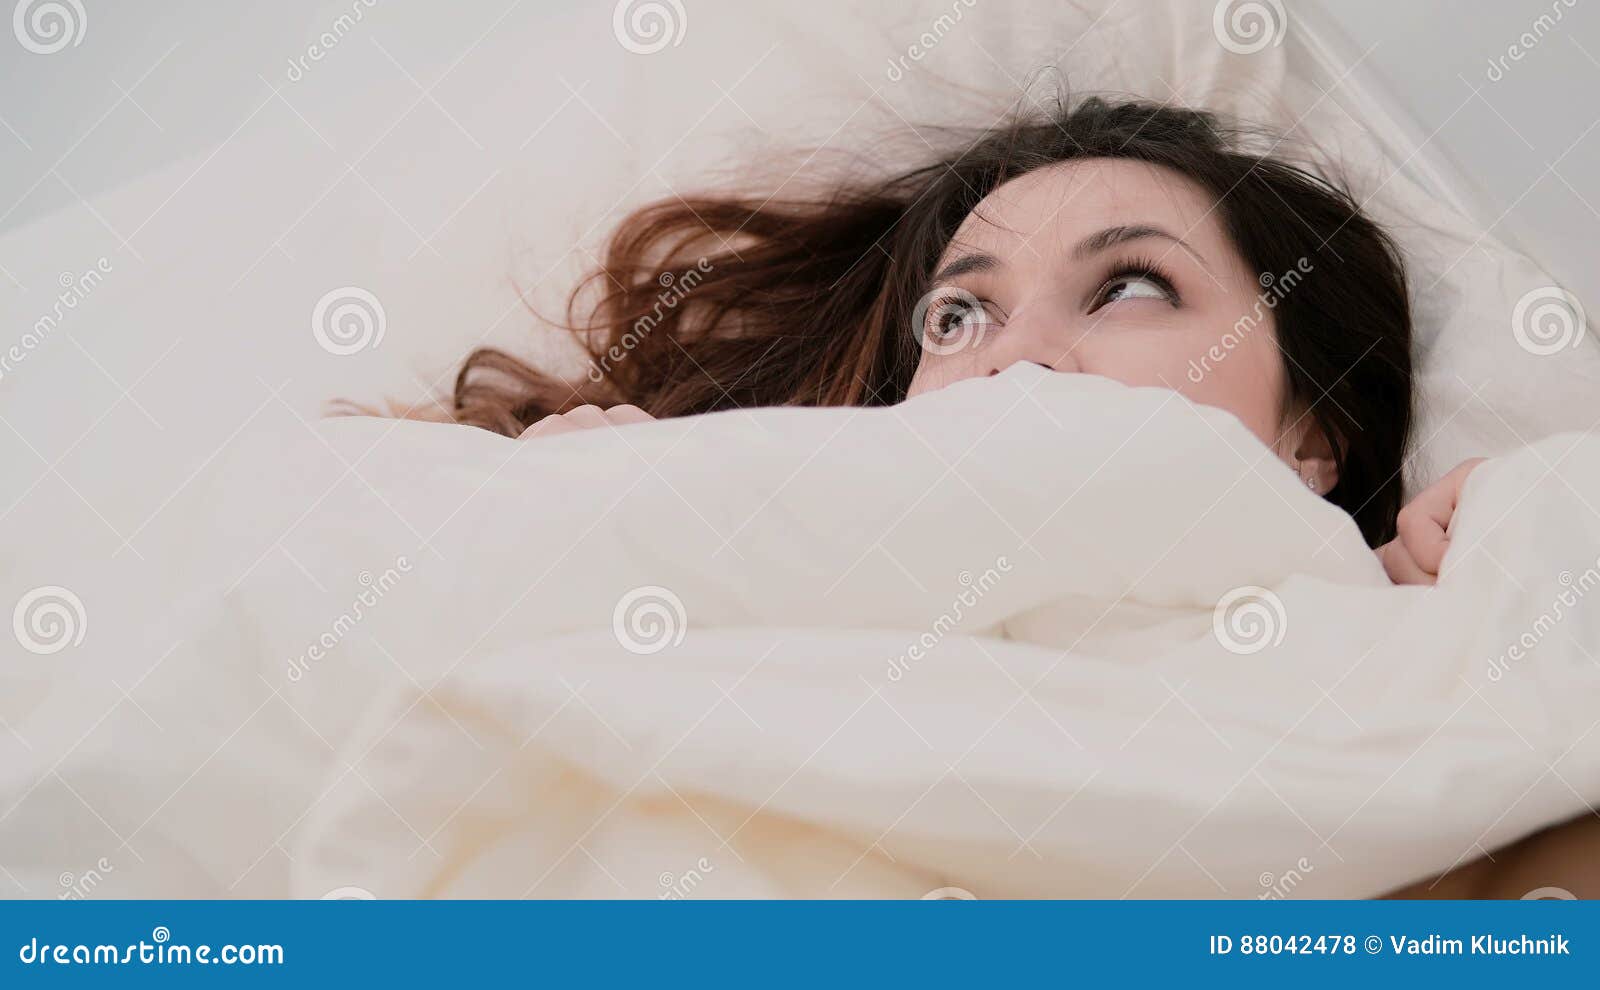 Девушка укрывается листом. Девушка прячет лицо под одеяло. Испуганная девушка прячется под одеялом вид сверху. Чел под простыней в очках фото на обои.